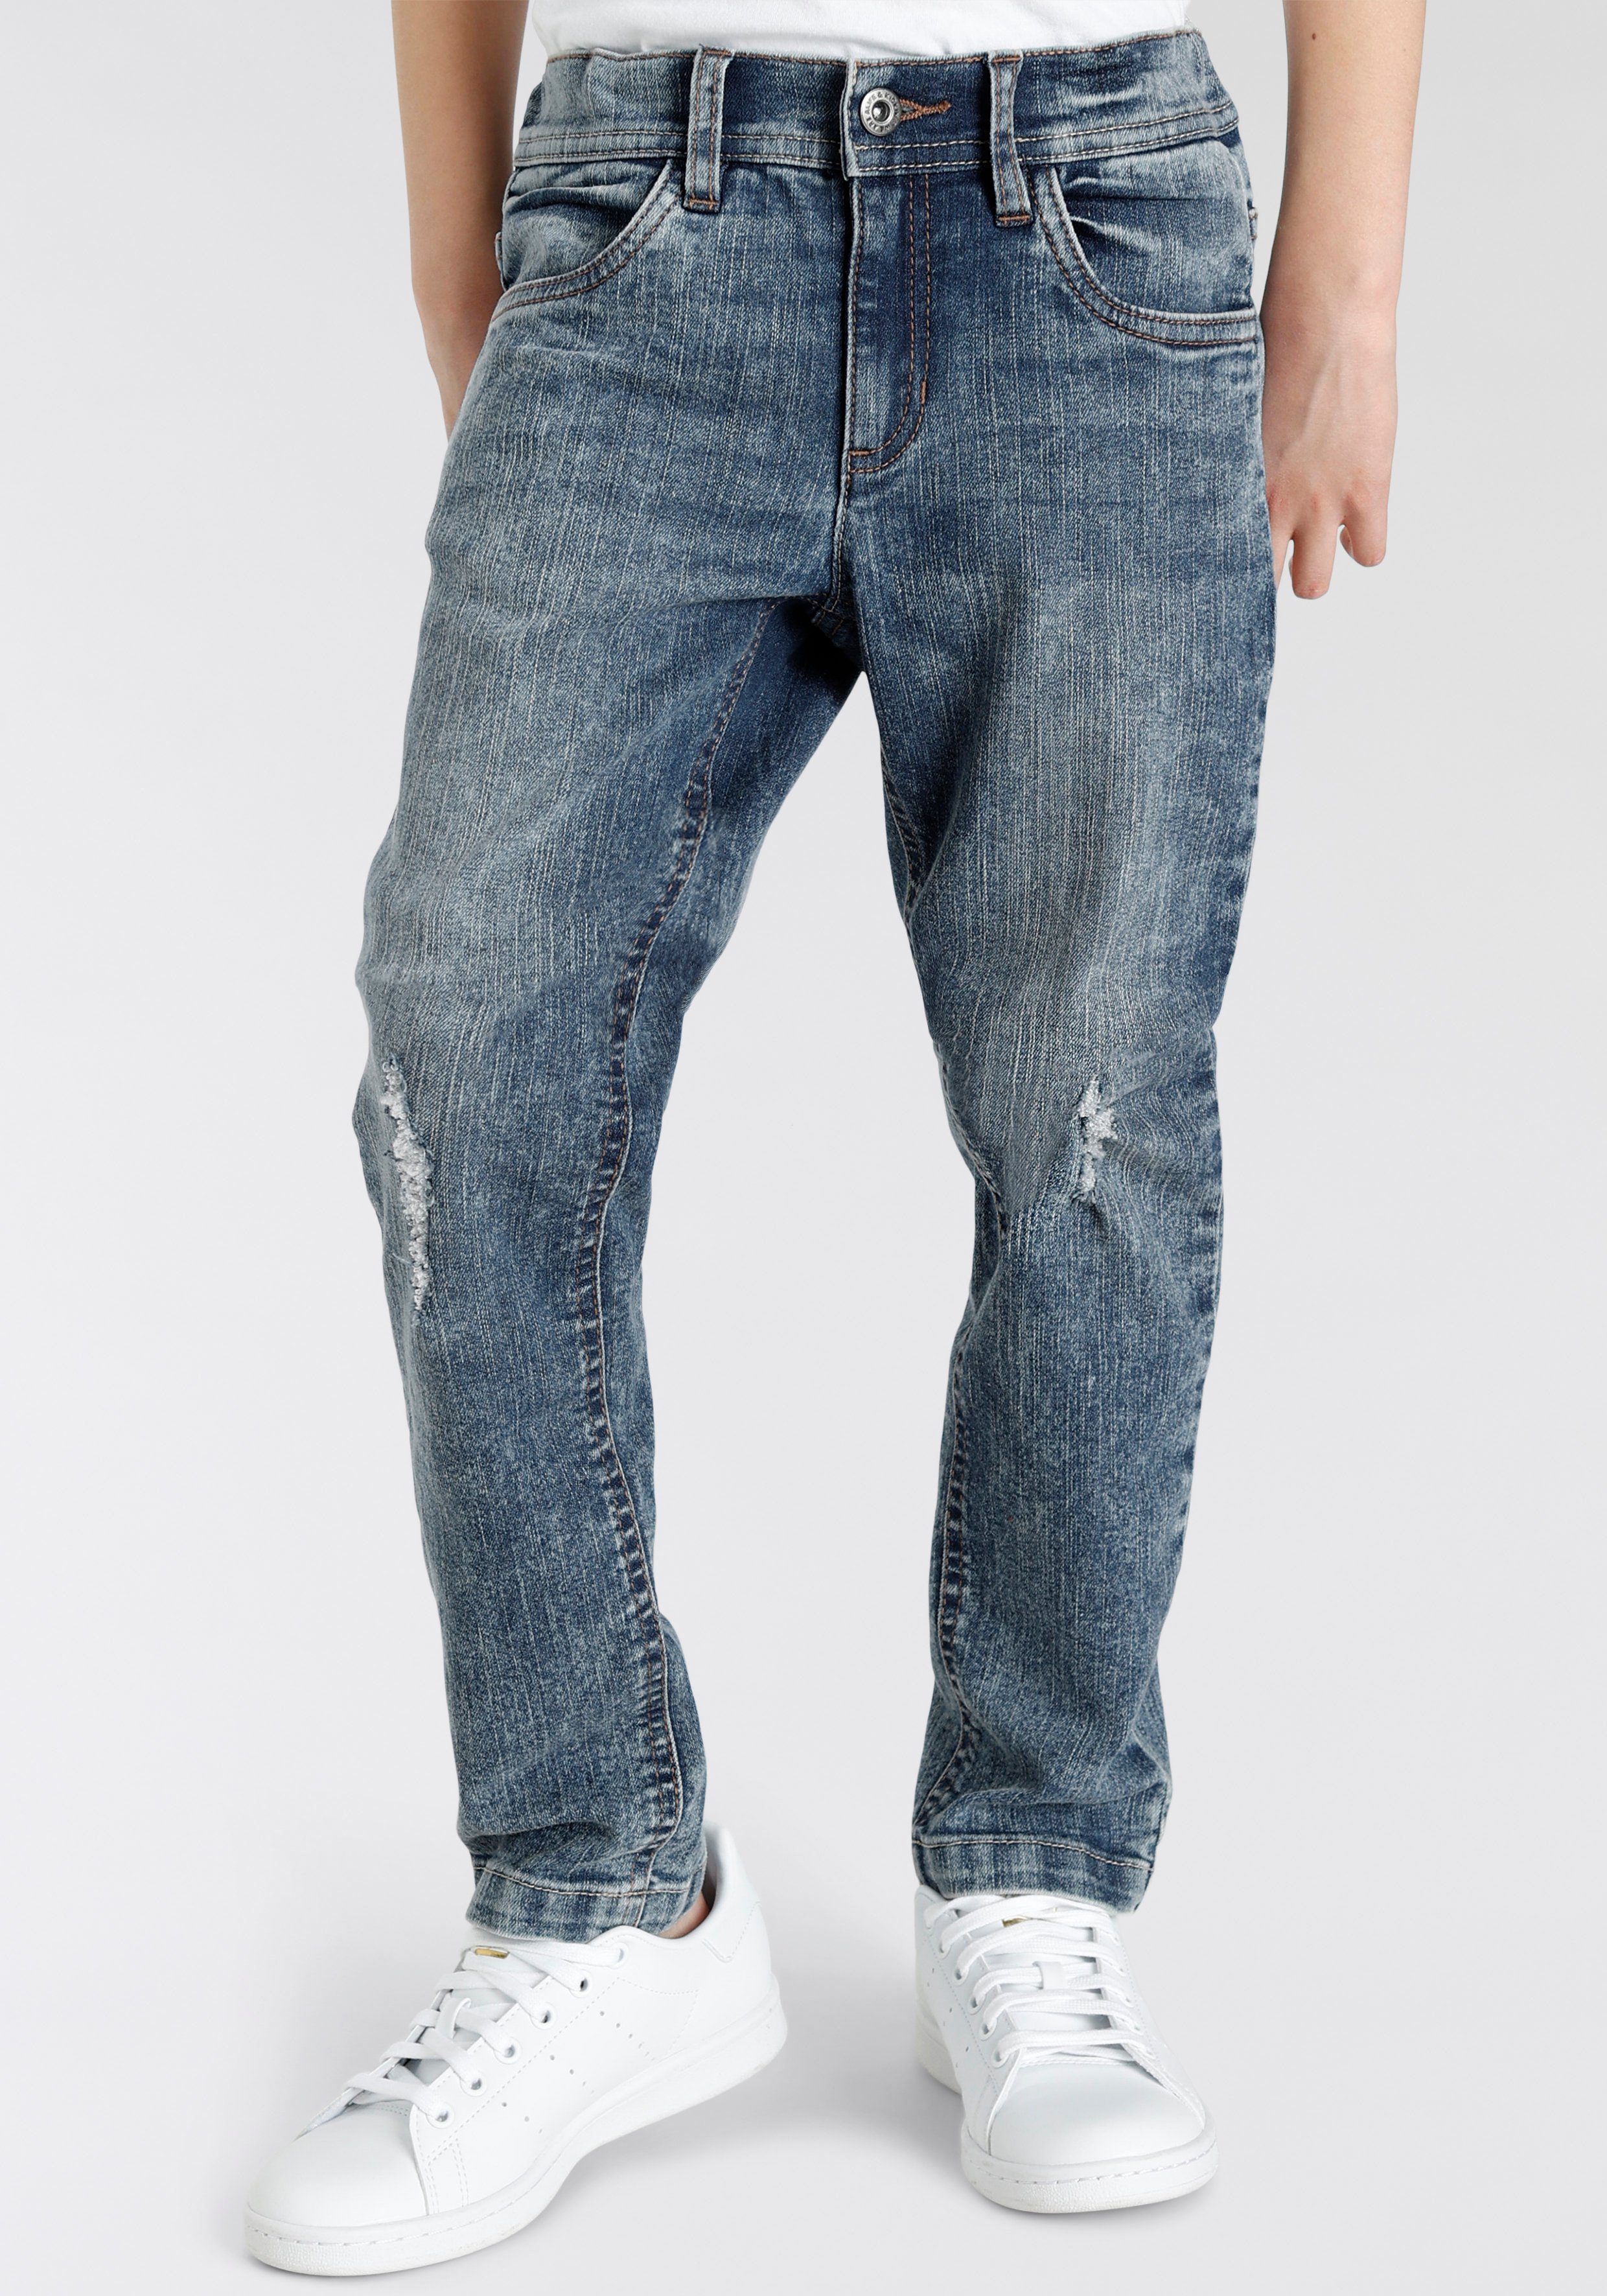 Alife & Kickin Straight-Jeans für Jungen, NEUE MARKE